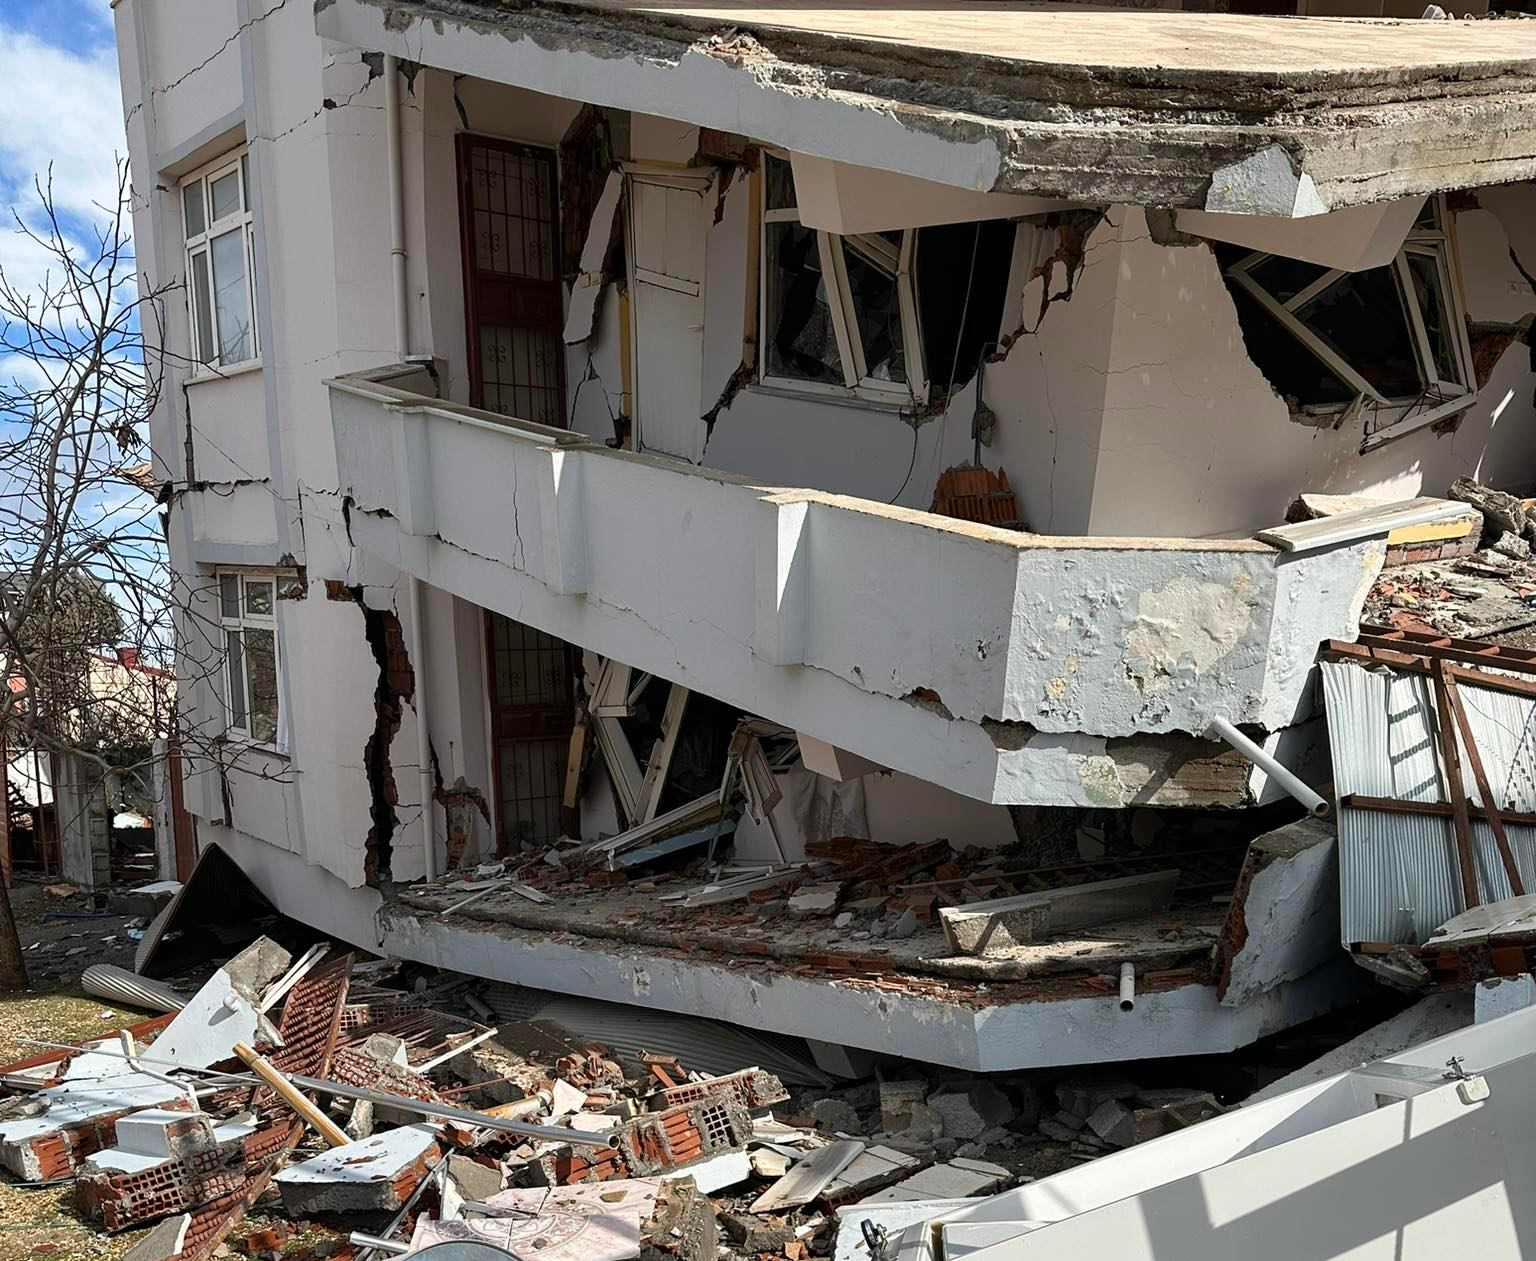 Cuộc điện thoại lẫn nước mắt của người chồng Thổ Nhĩ Kỳ gọi cho vợ Việt sau động đất - Ảnh 2.